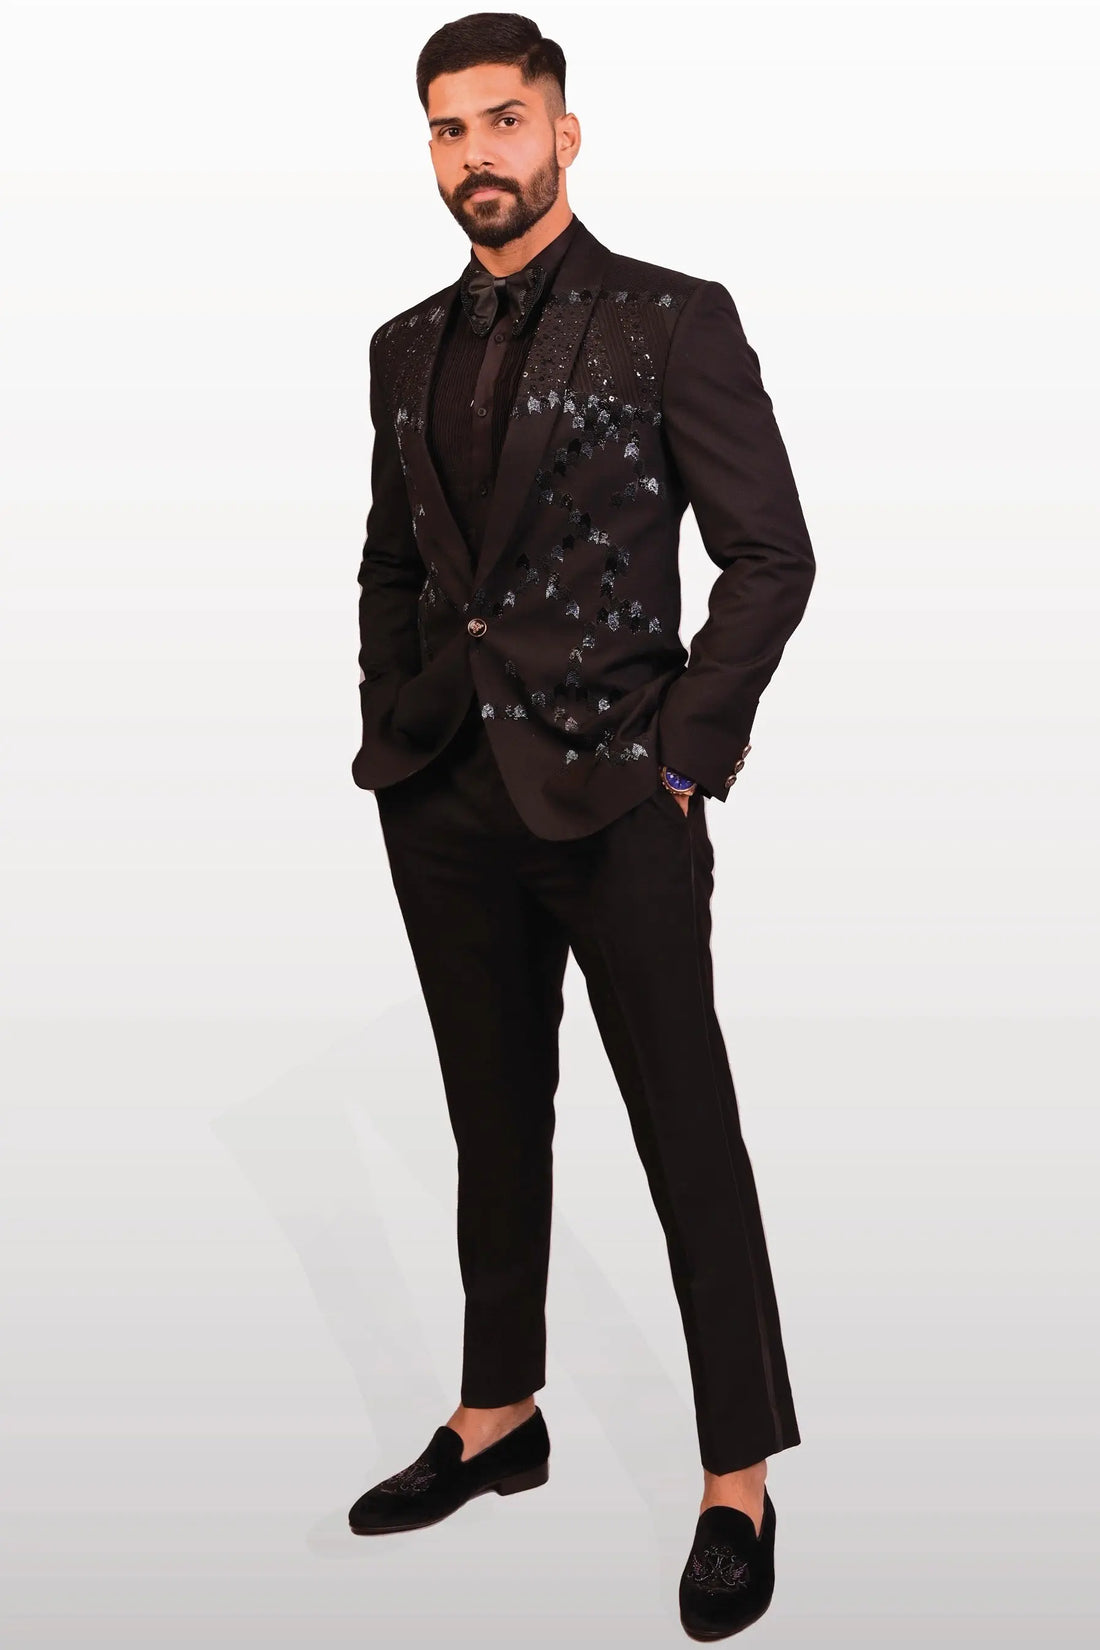 Black Sequins Embellished Suit 